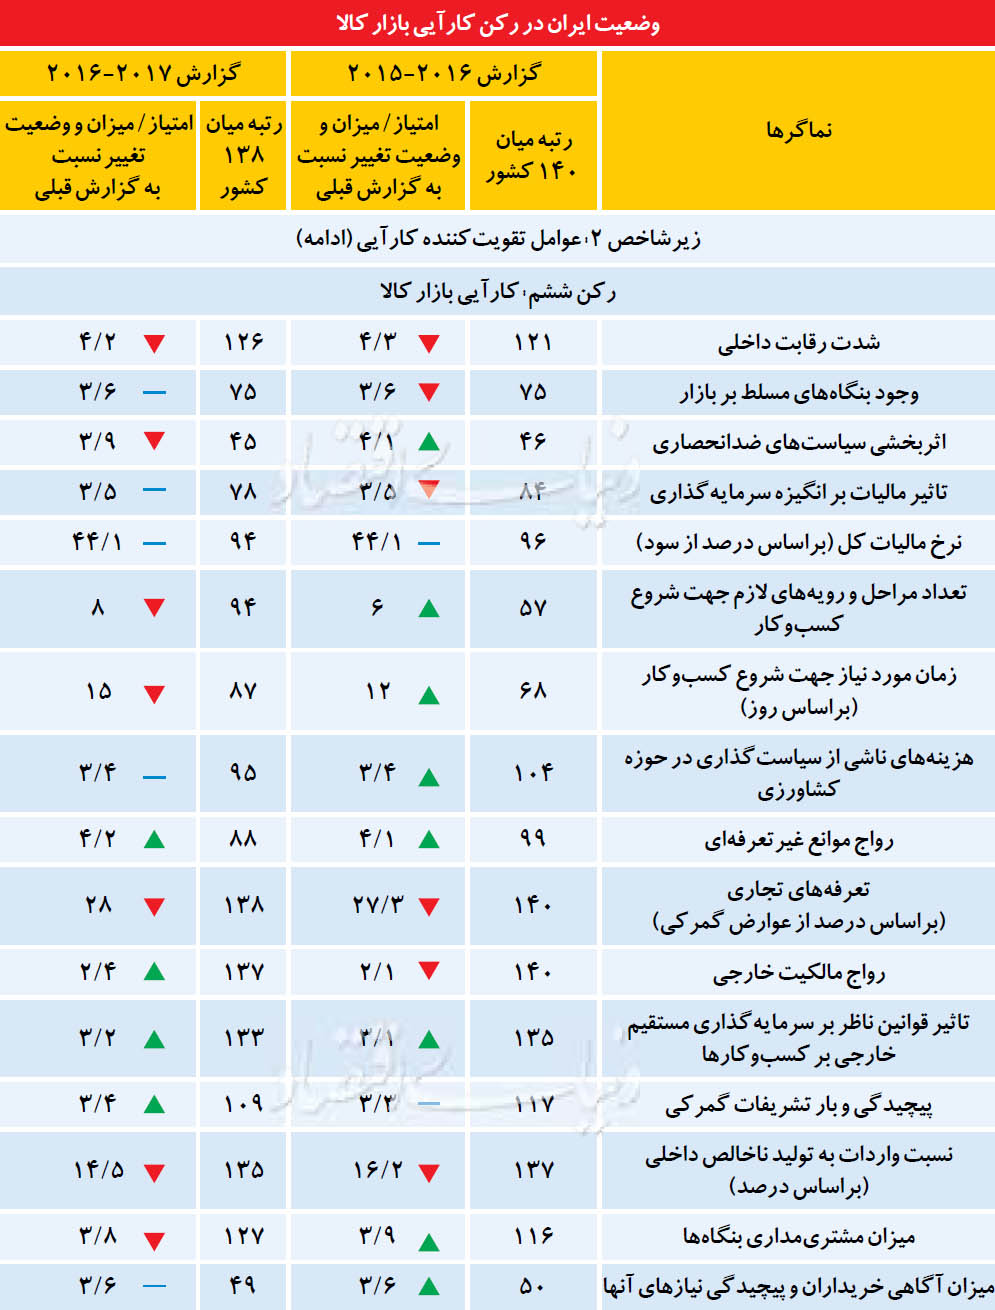 16 عامل کارآیی بازار کالای ایران